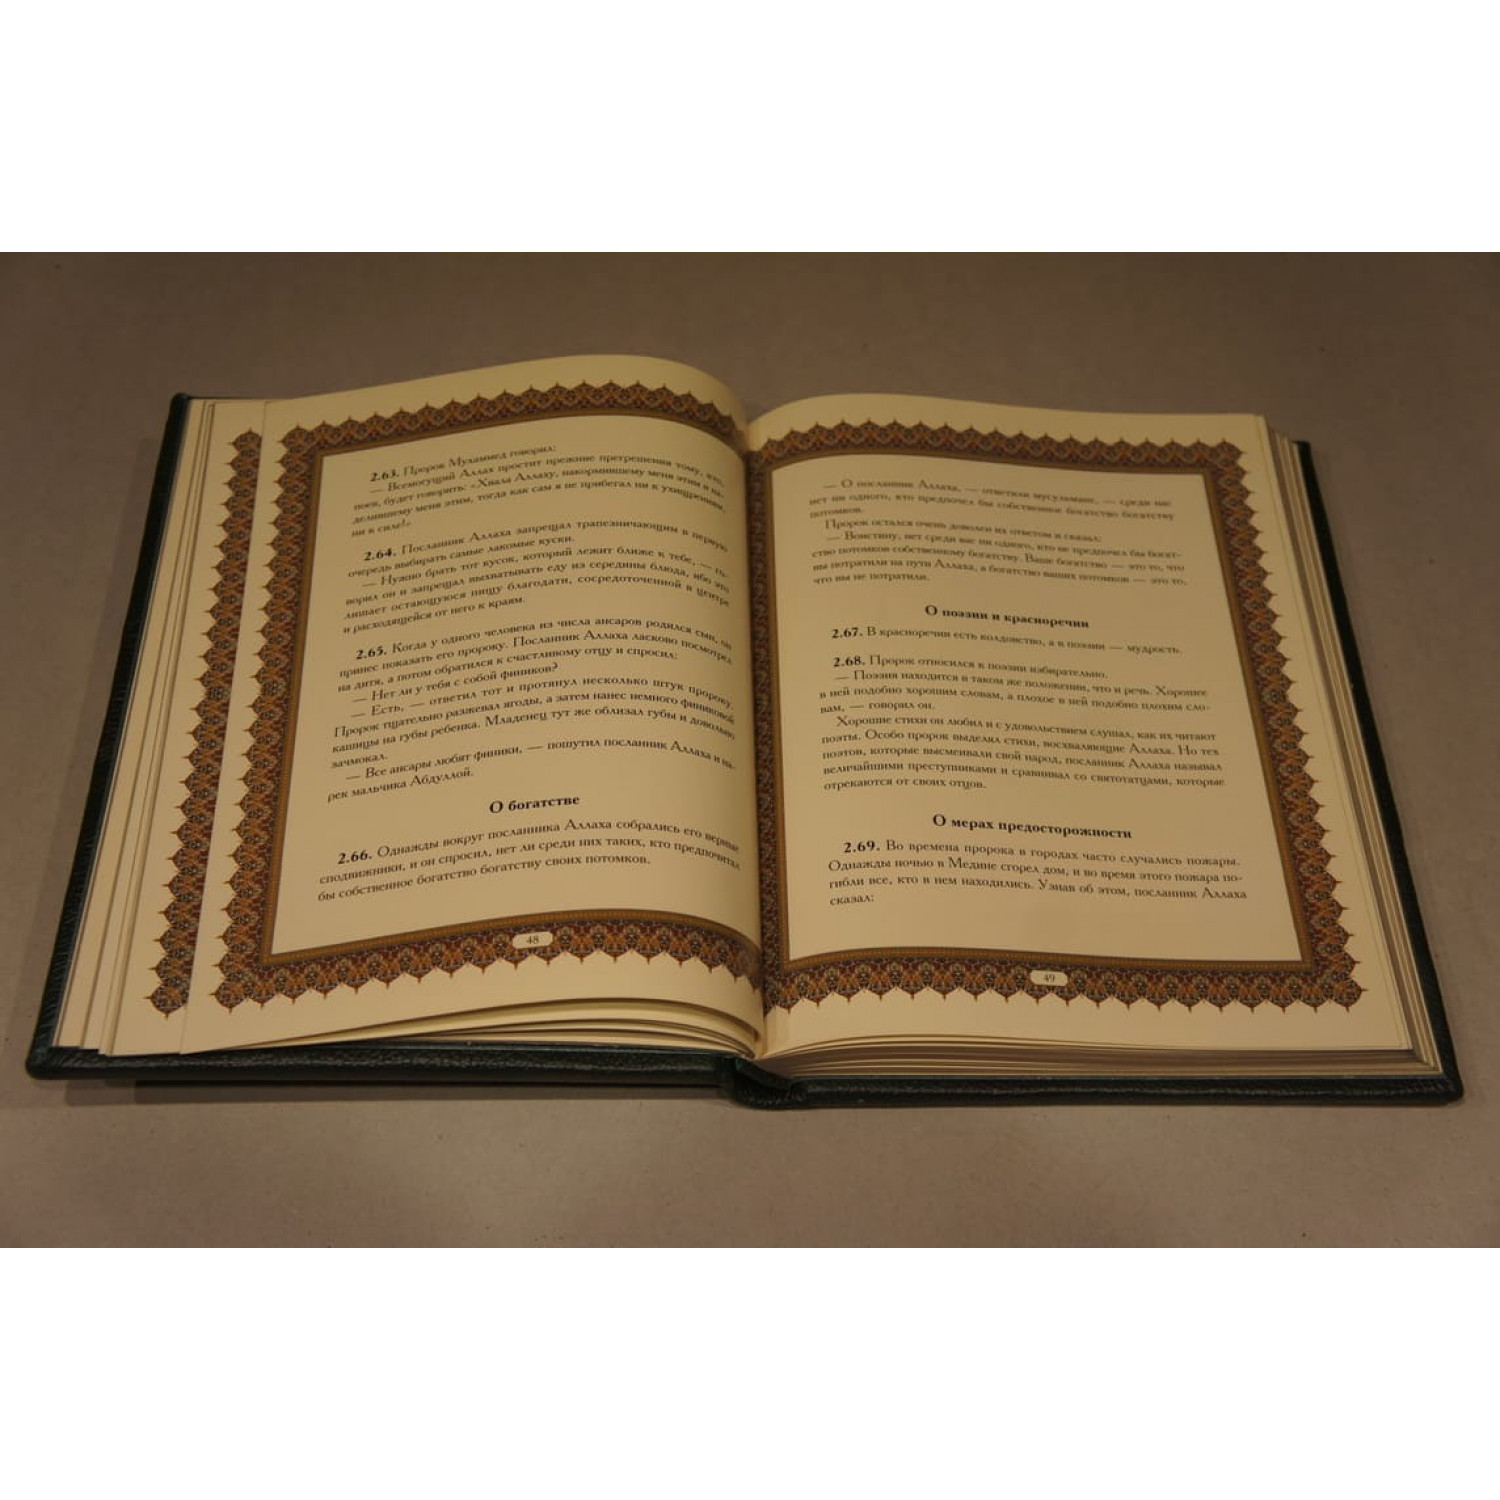 Подарочное издание "Хадисы о пророке Мухаммеде" в кожаном переплете ручной работы